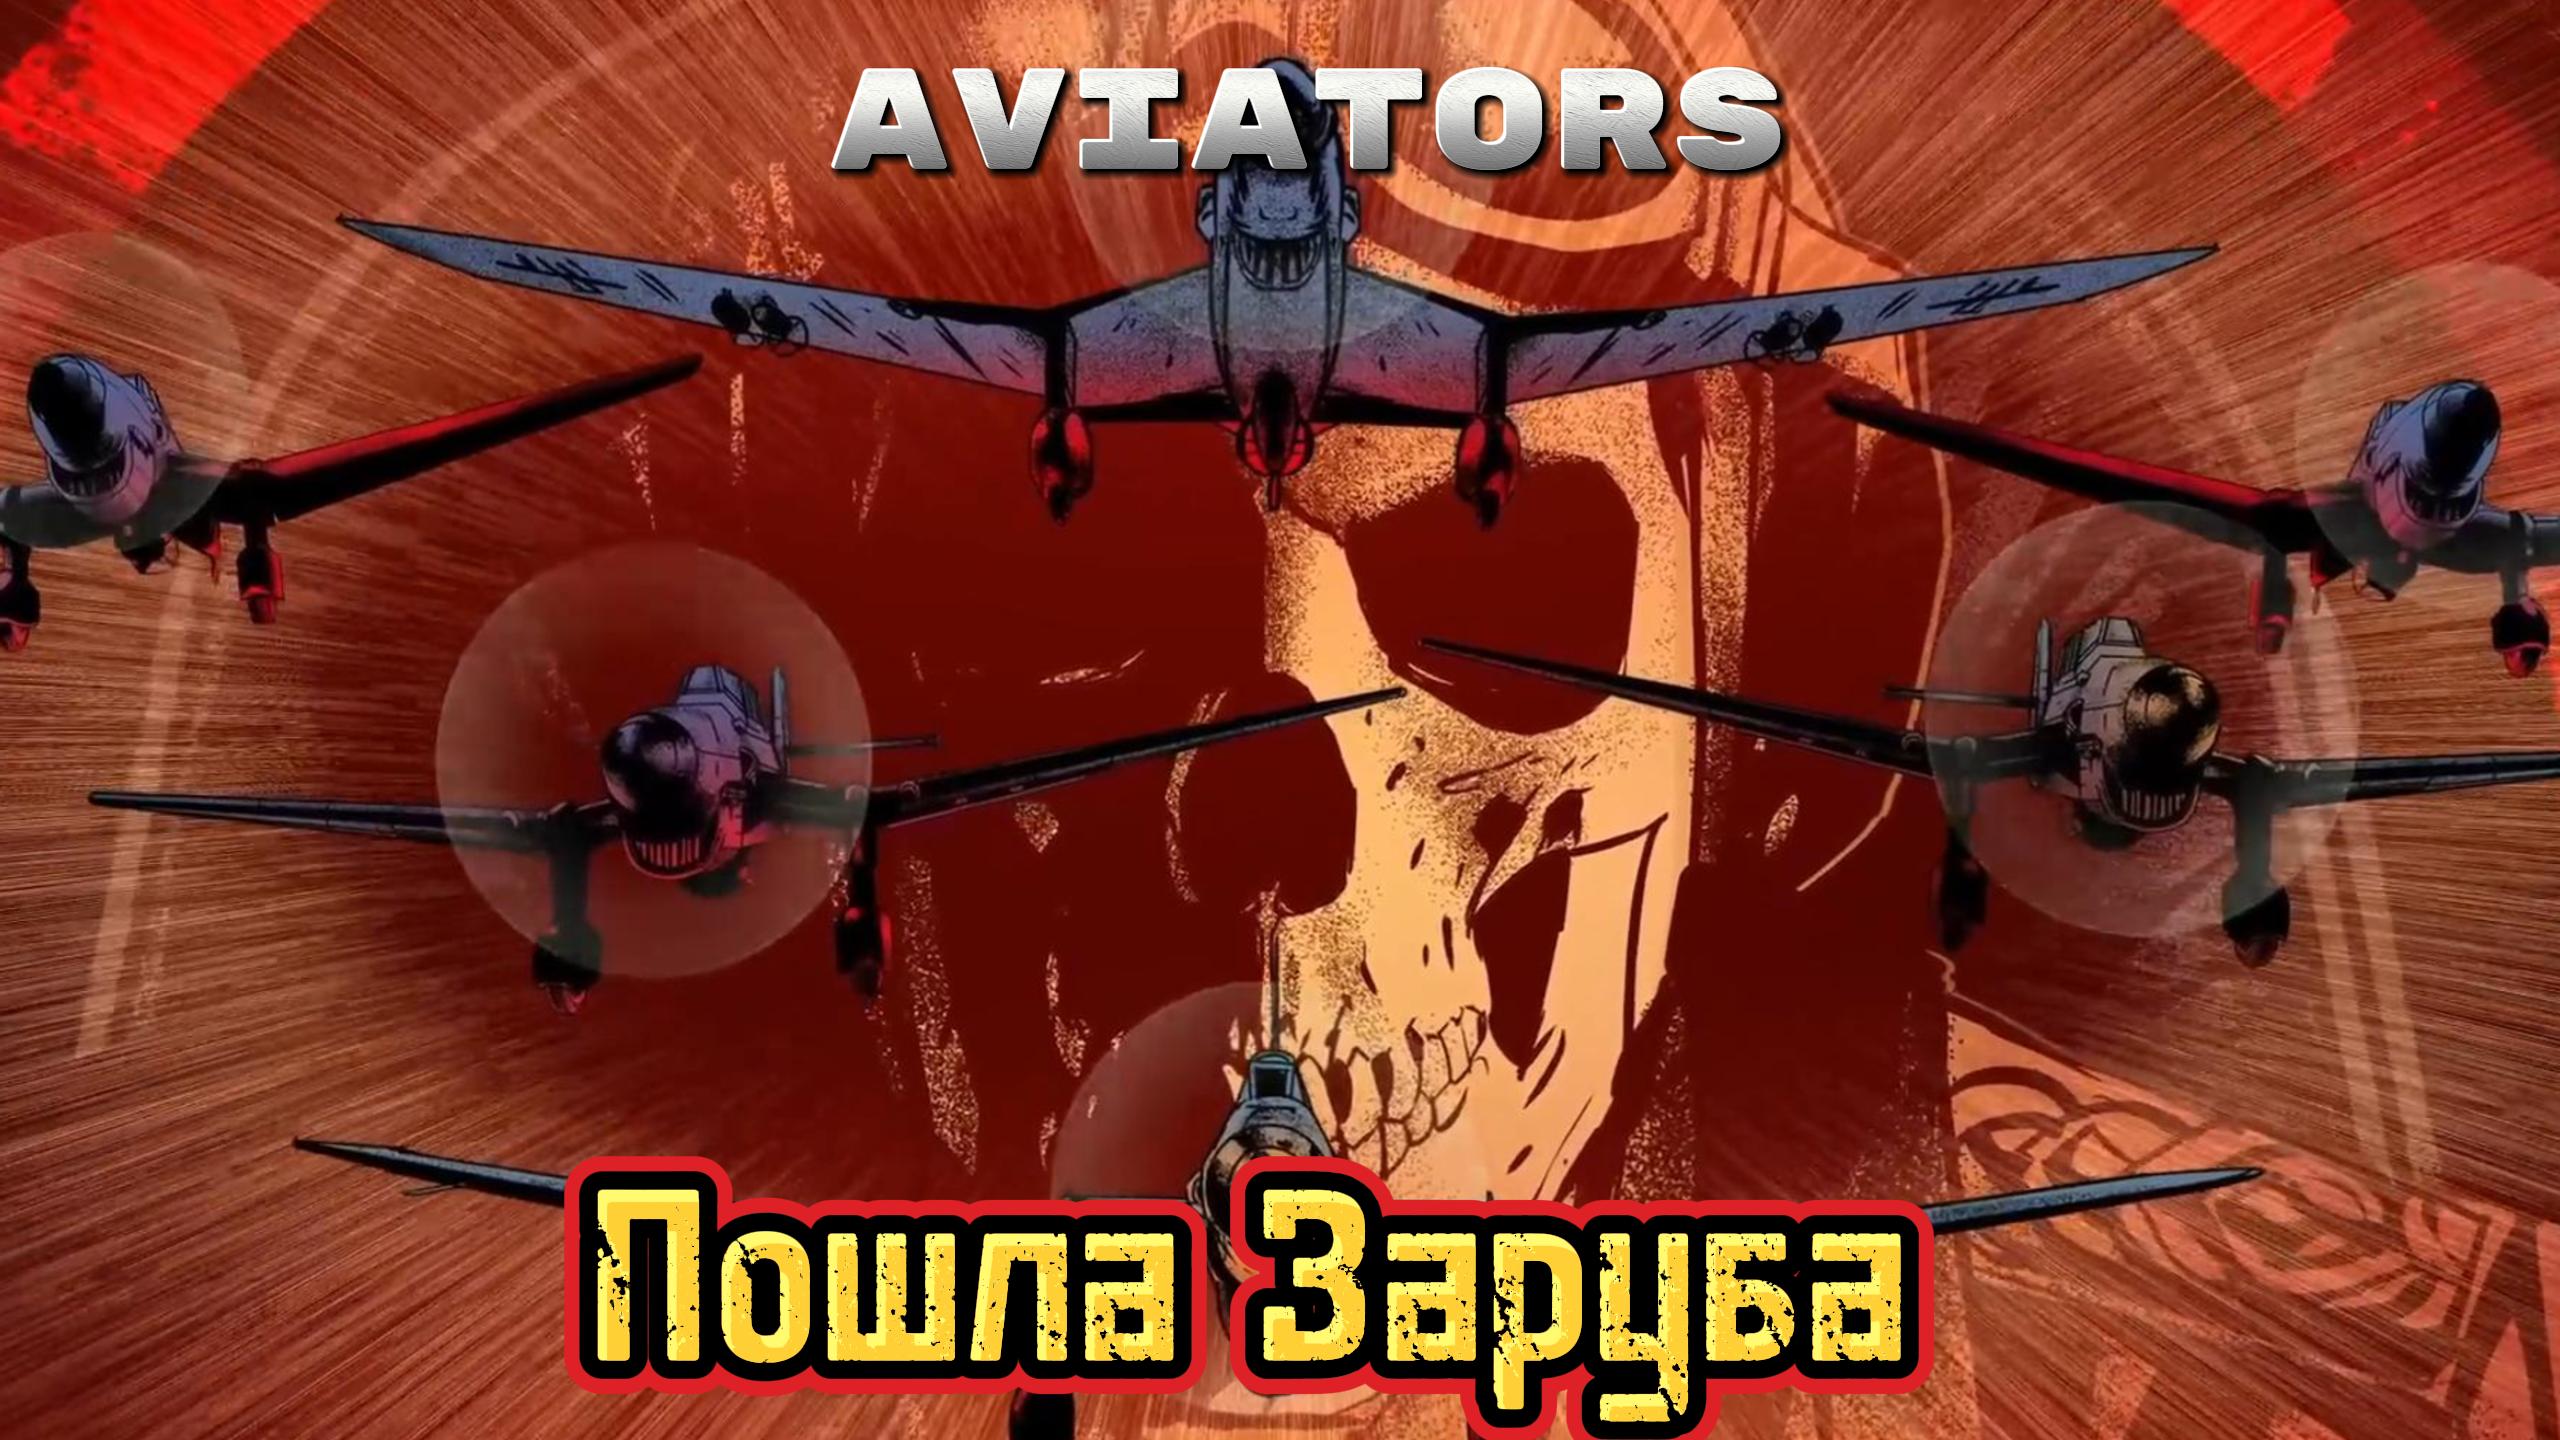 Пошла заруба ФИНАЛ ► Aviators#2